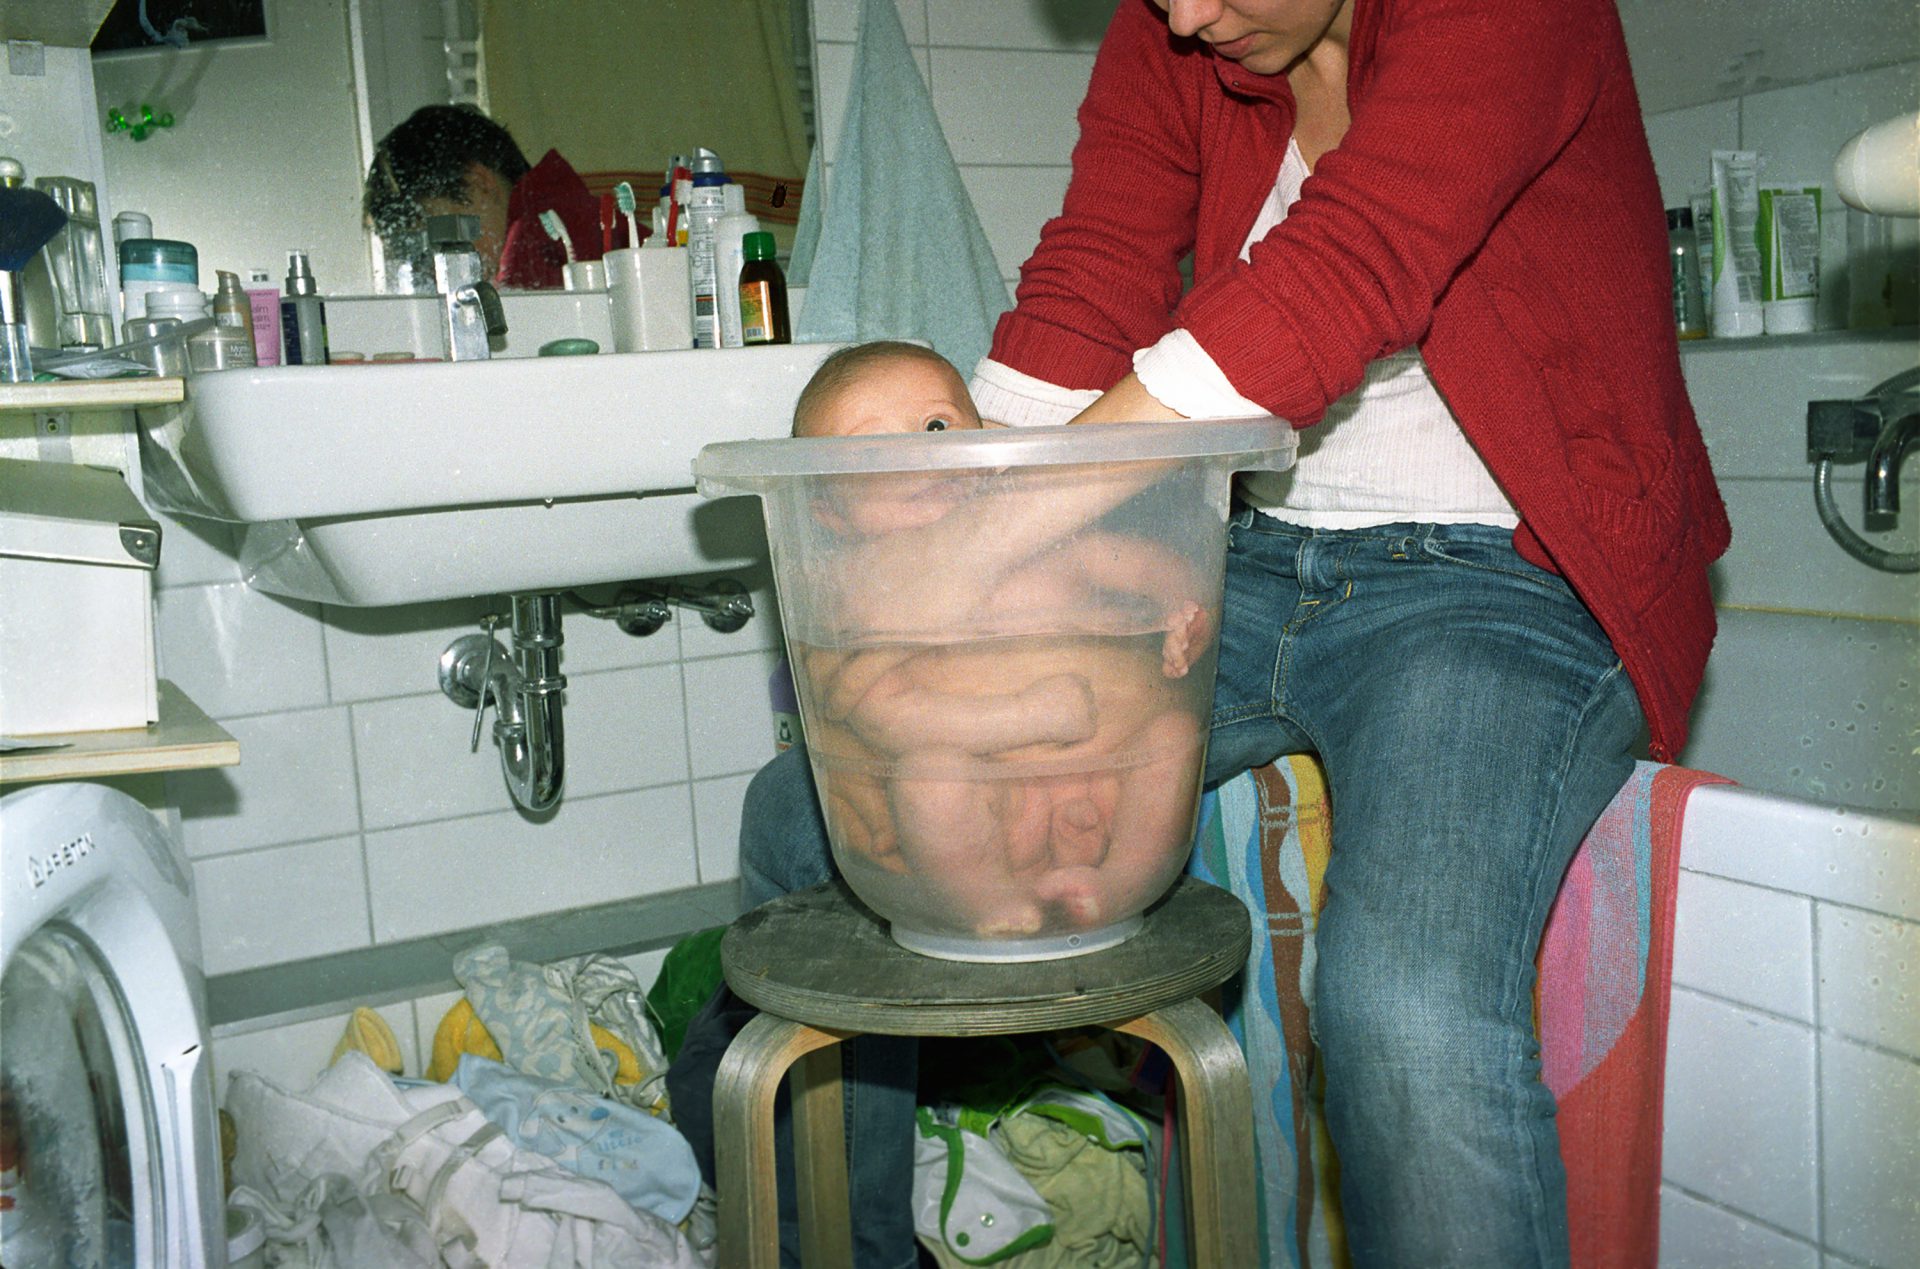 Kobieta kąpie niemowlę w wiaderku.